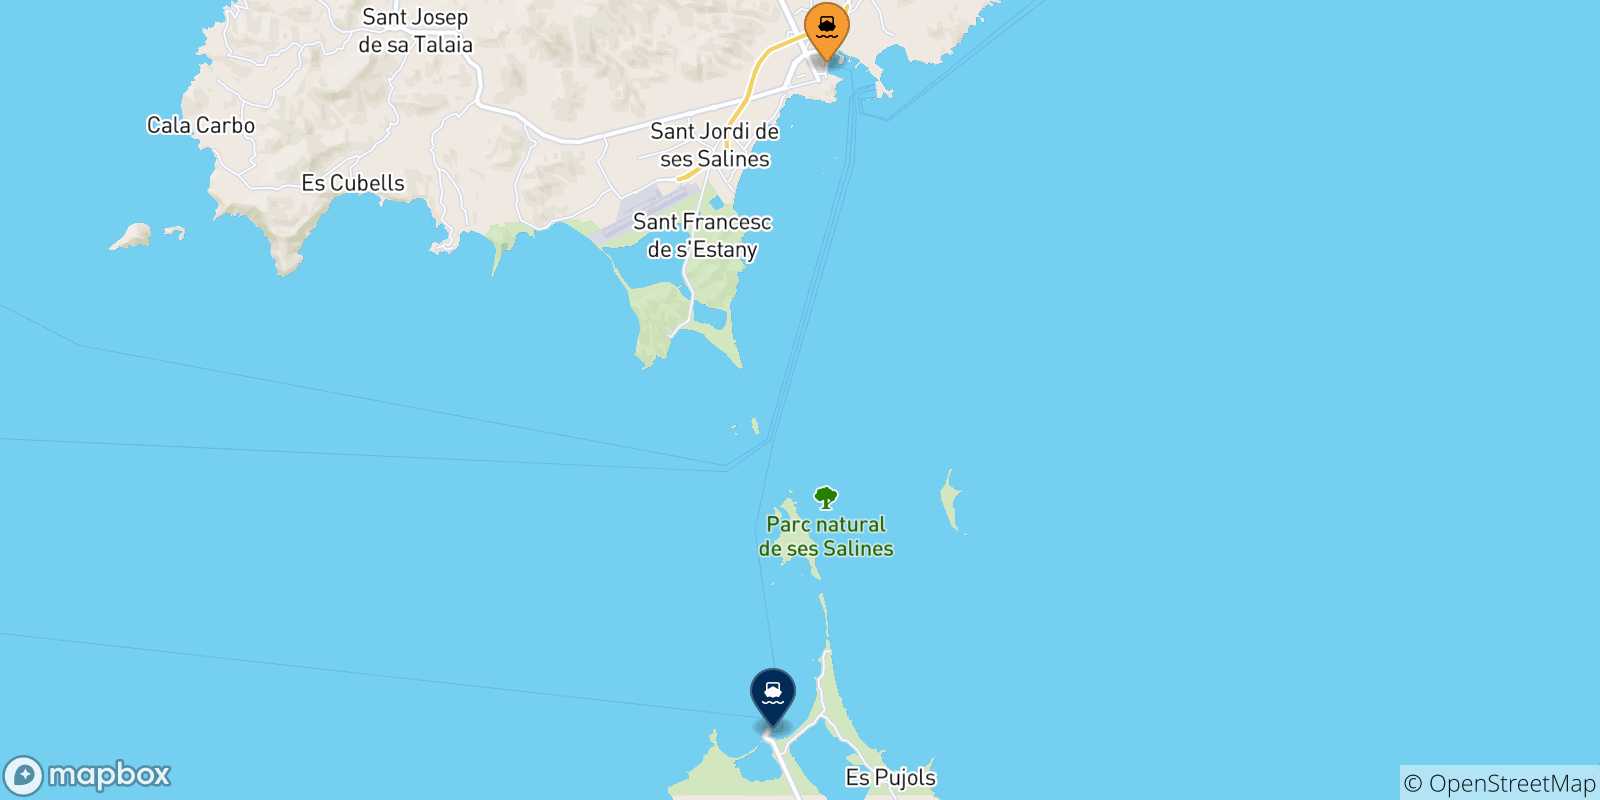 Mappa delle possibili rotte tra Ibiza e le Isole Baleari